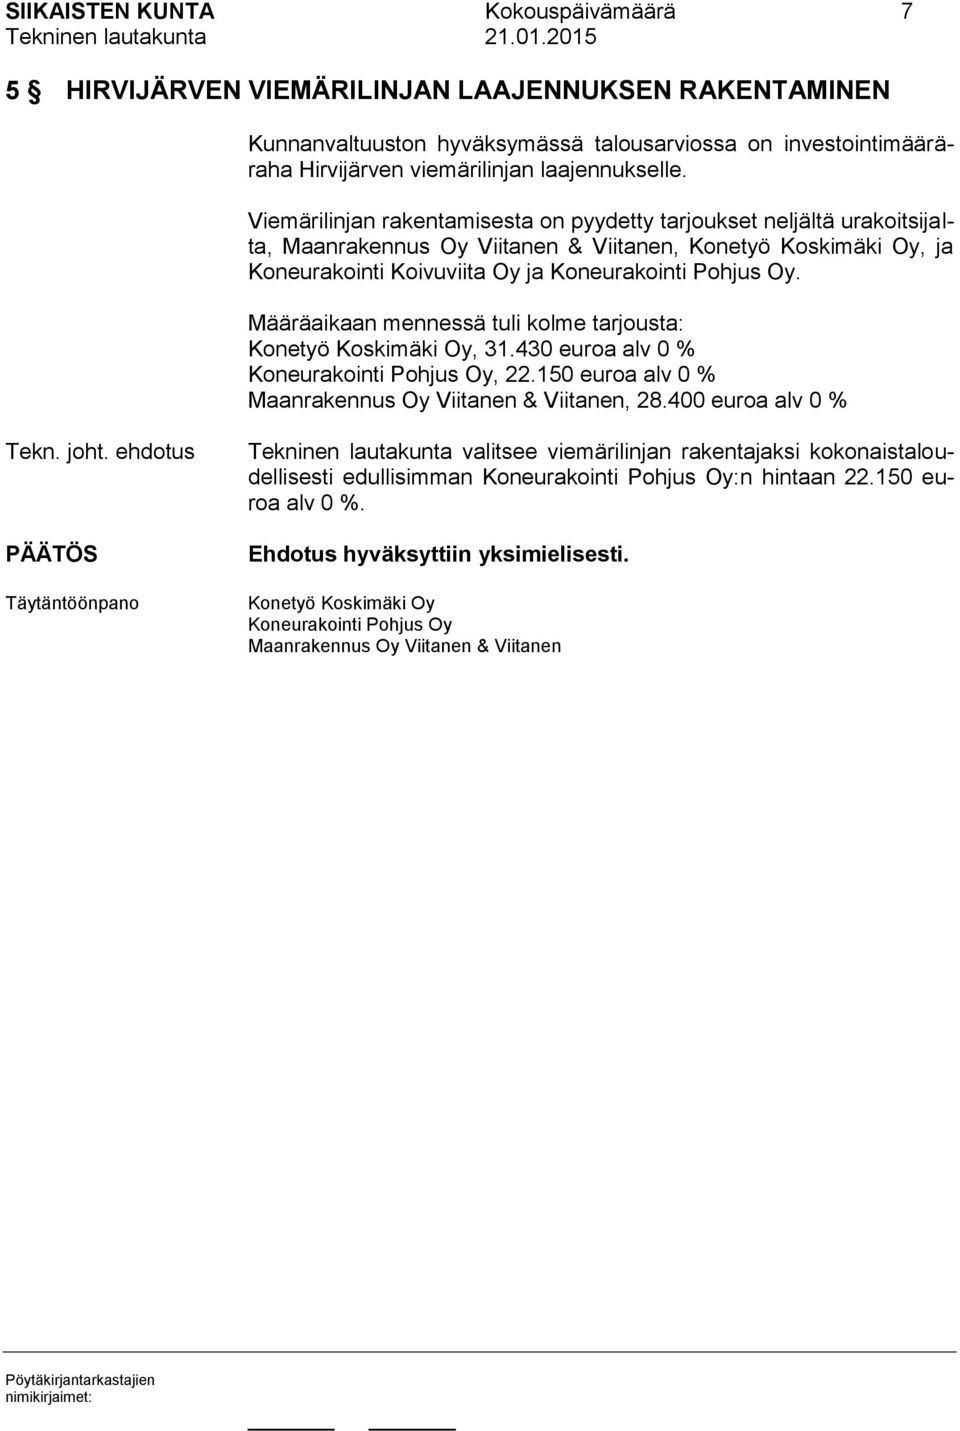 Määräaikaan mennessä tuli kolme tarjousta: Konetyö Koskimäki Oy, 31.430 euroa alv 0 % Koneurakointi Pohjus Oy, 22.150 euroa alv 0 % Maanrakennus Oy Viitanen & Viitanen, 28.